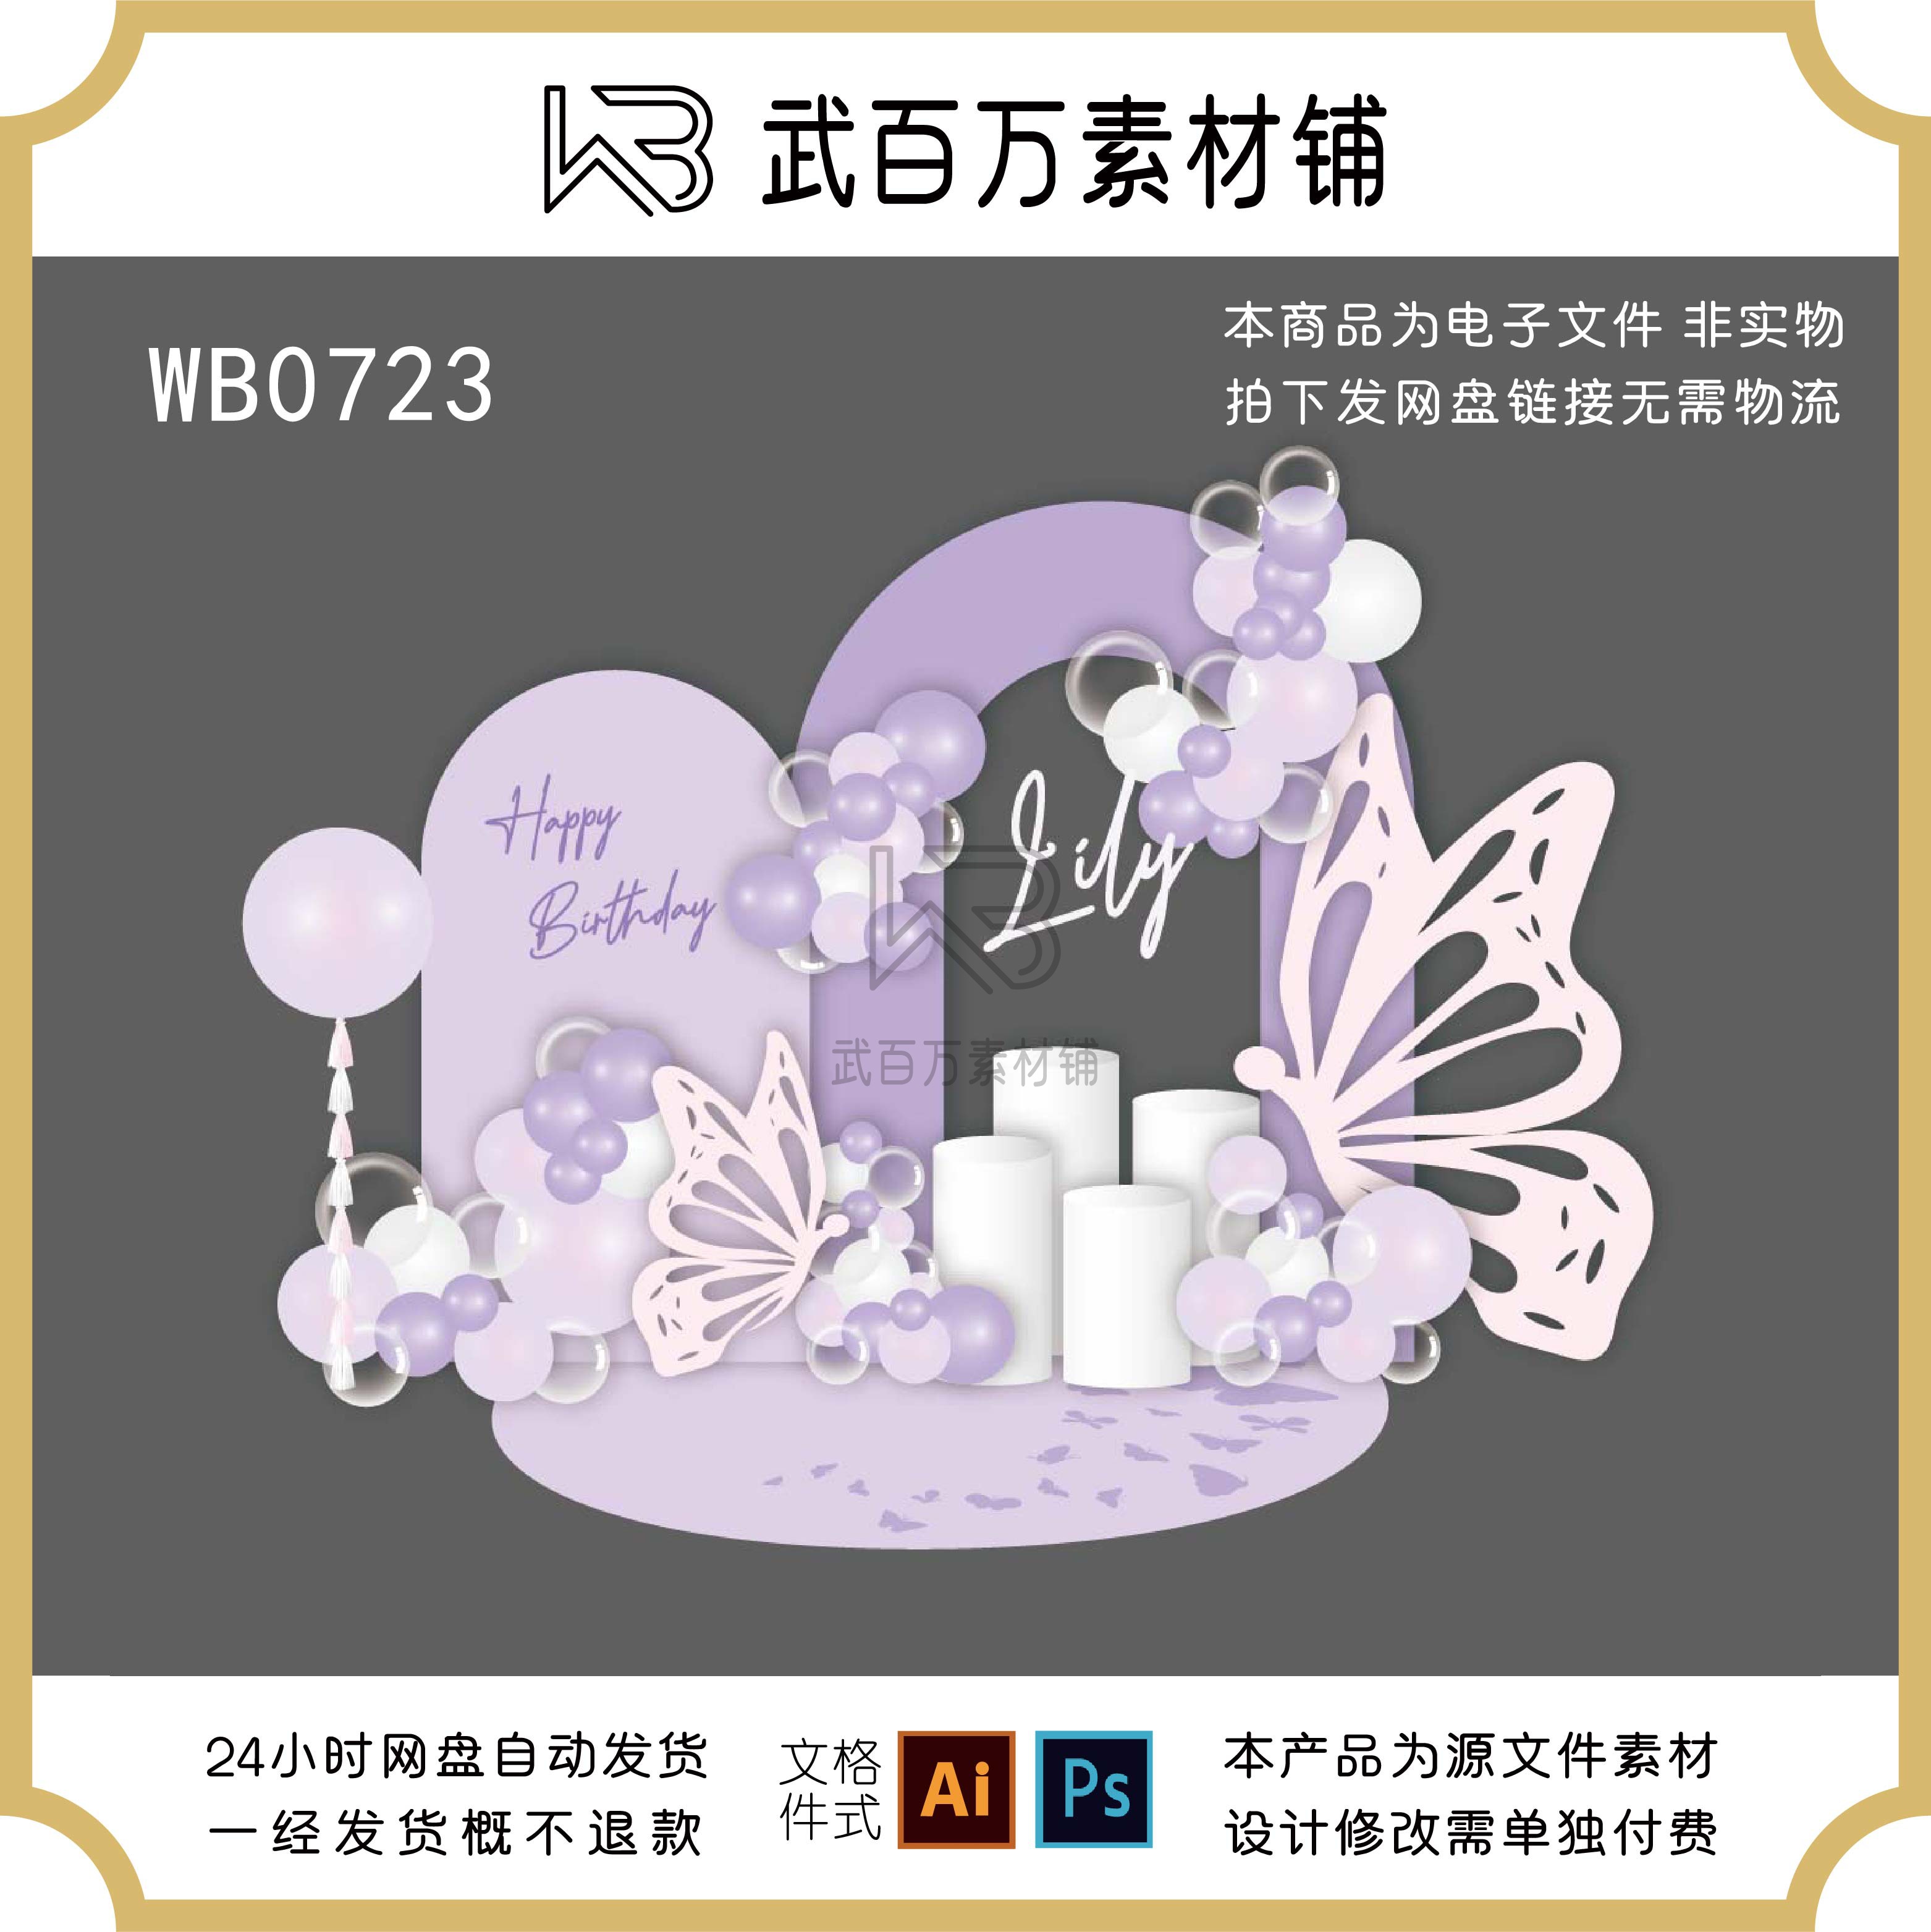 紫色简约蝴蝶女神生日剪影拱形派对宝宝宴甜品拍照背景设计素材